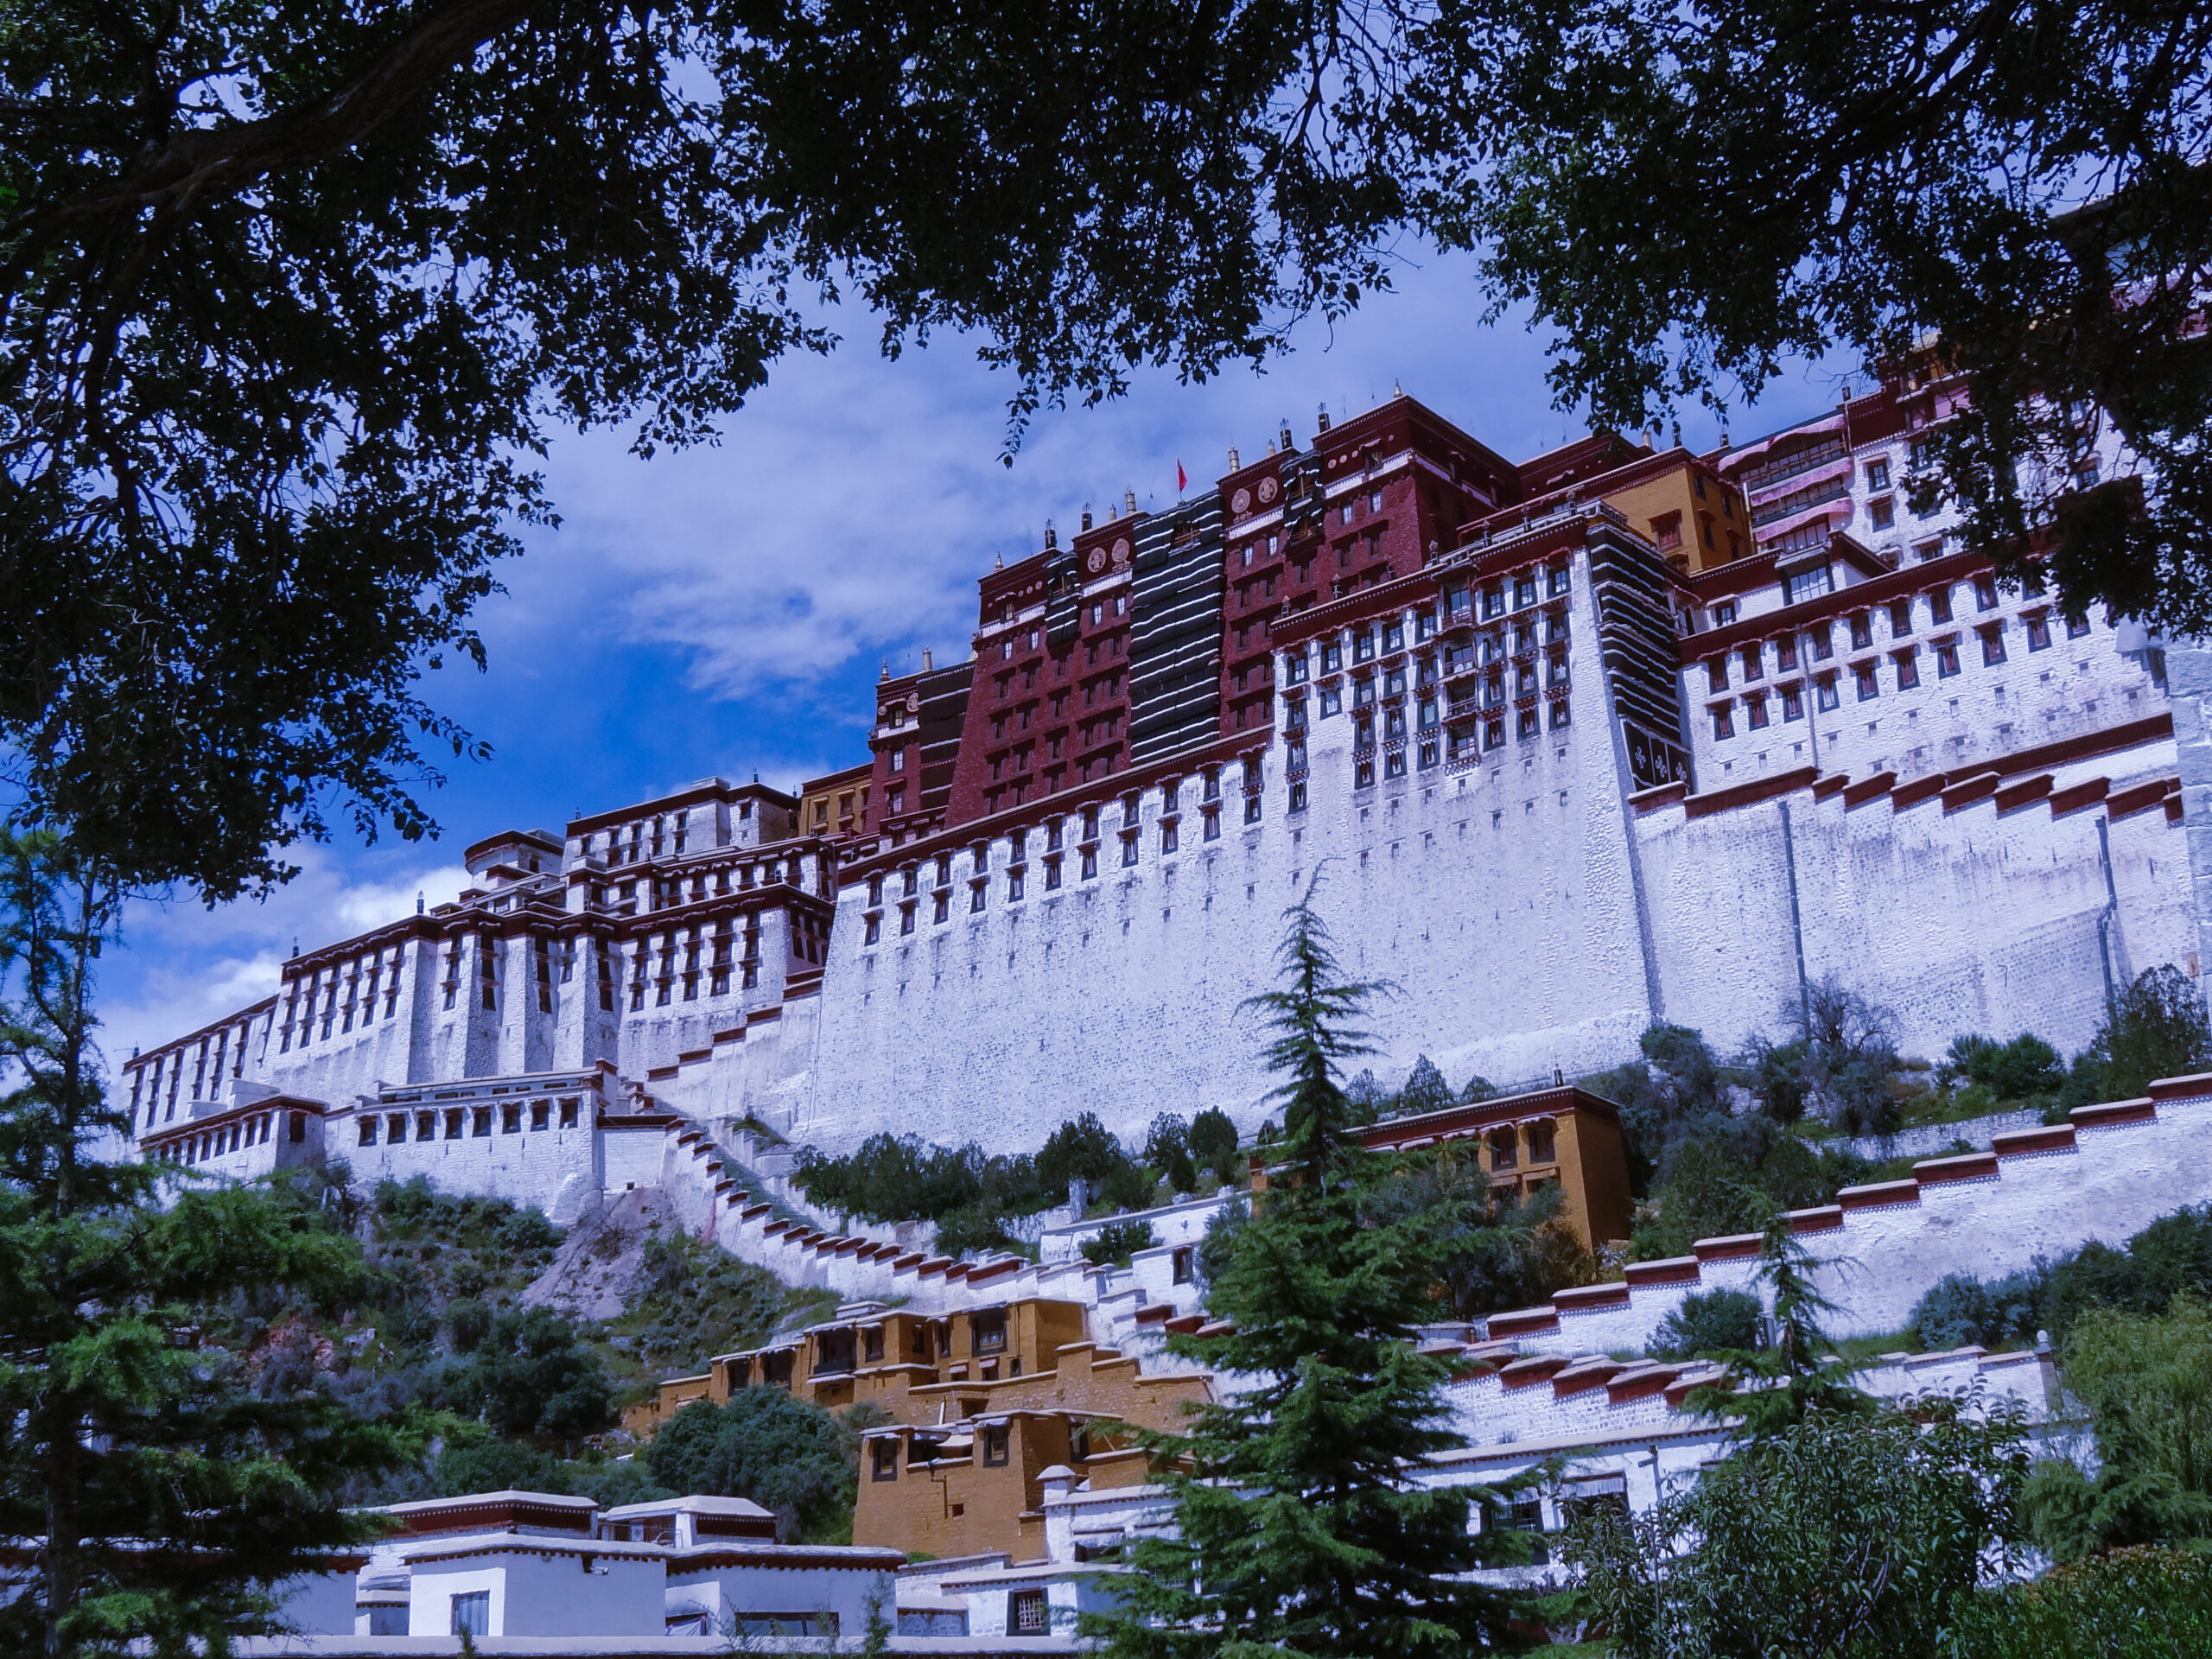 Lhasa, Namtso & Hidden Valleys